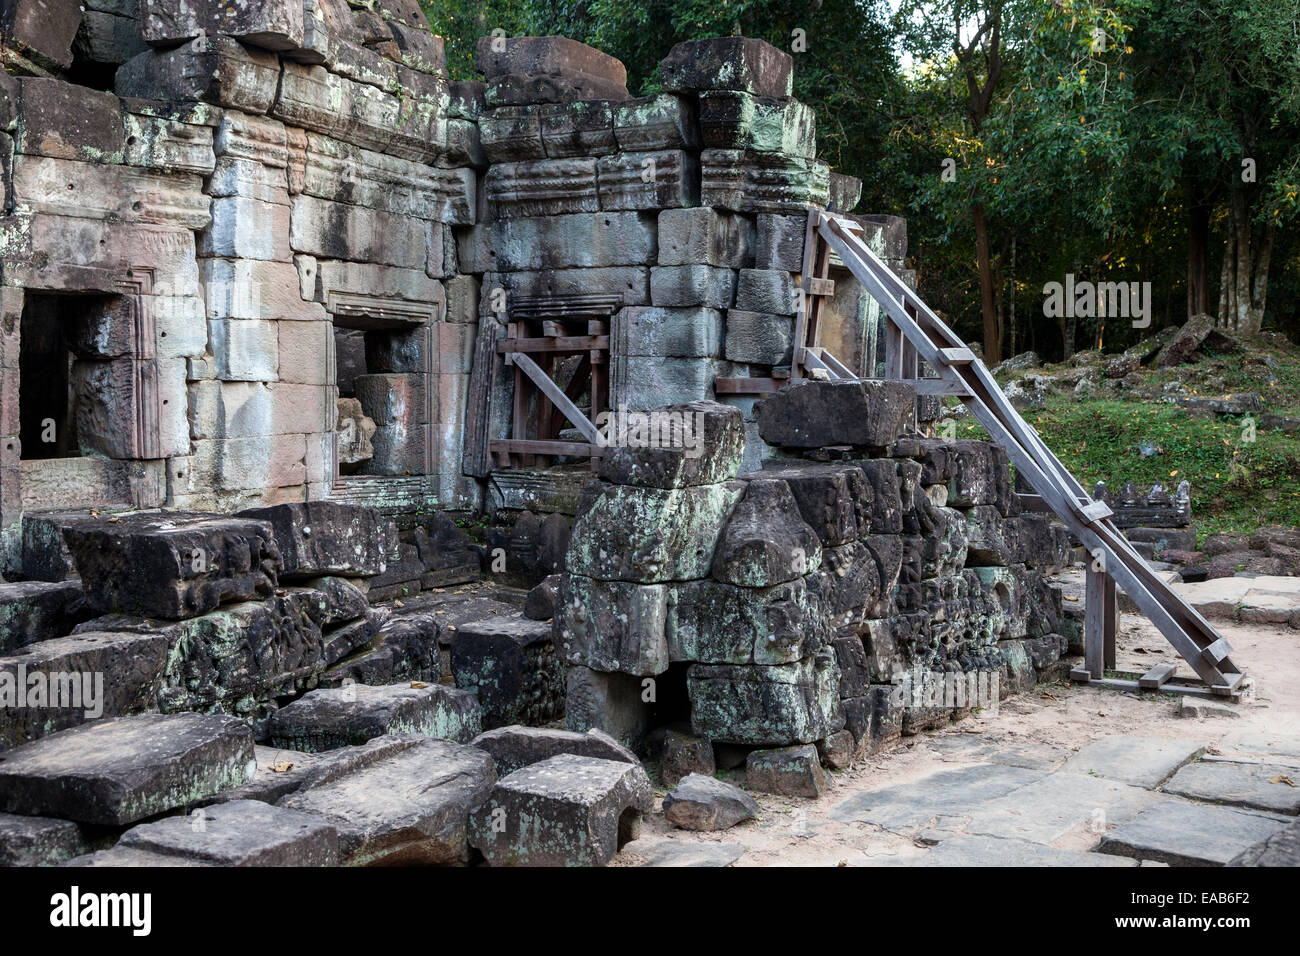 Cambogia. Preah Khan. La conservazione storica. Misure temporanee adottate per evitare un ulteriore crollo delle rovine. Foto Stock